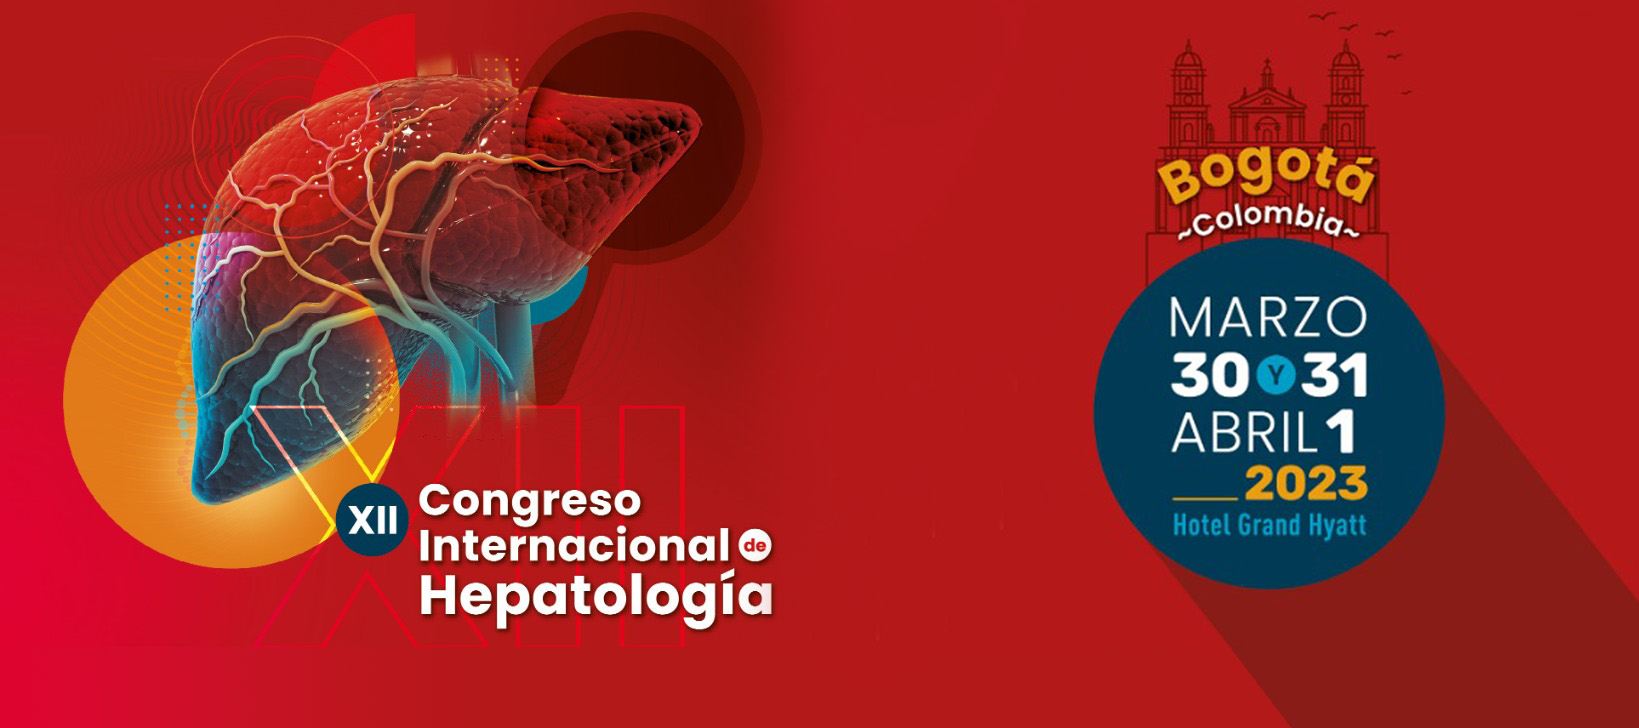 XII Congreso Internacional de Hepatología 2023 Asociación